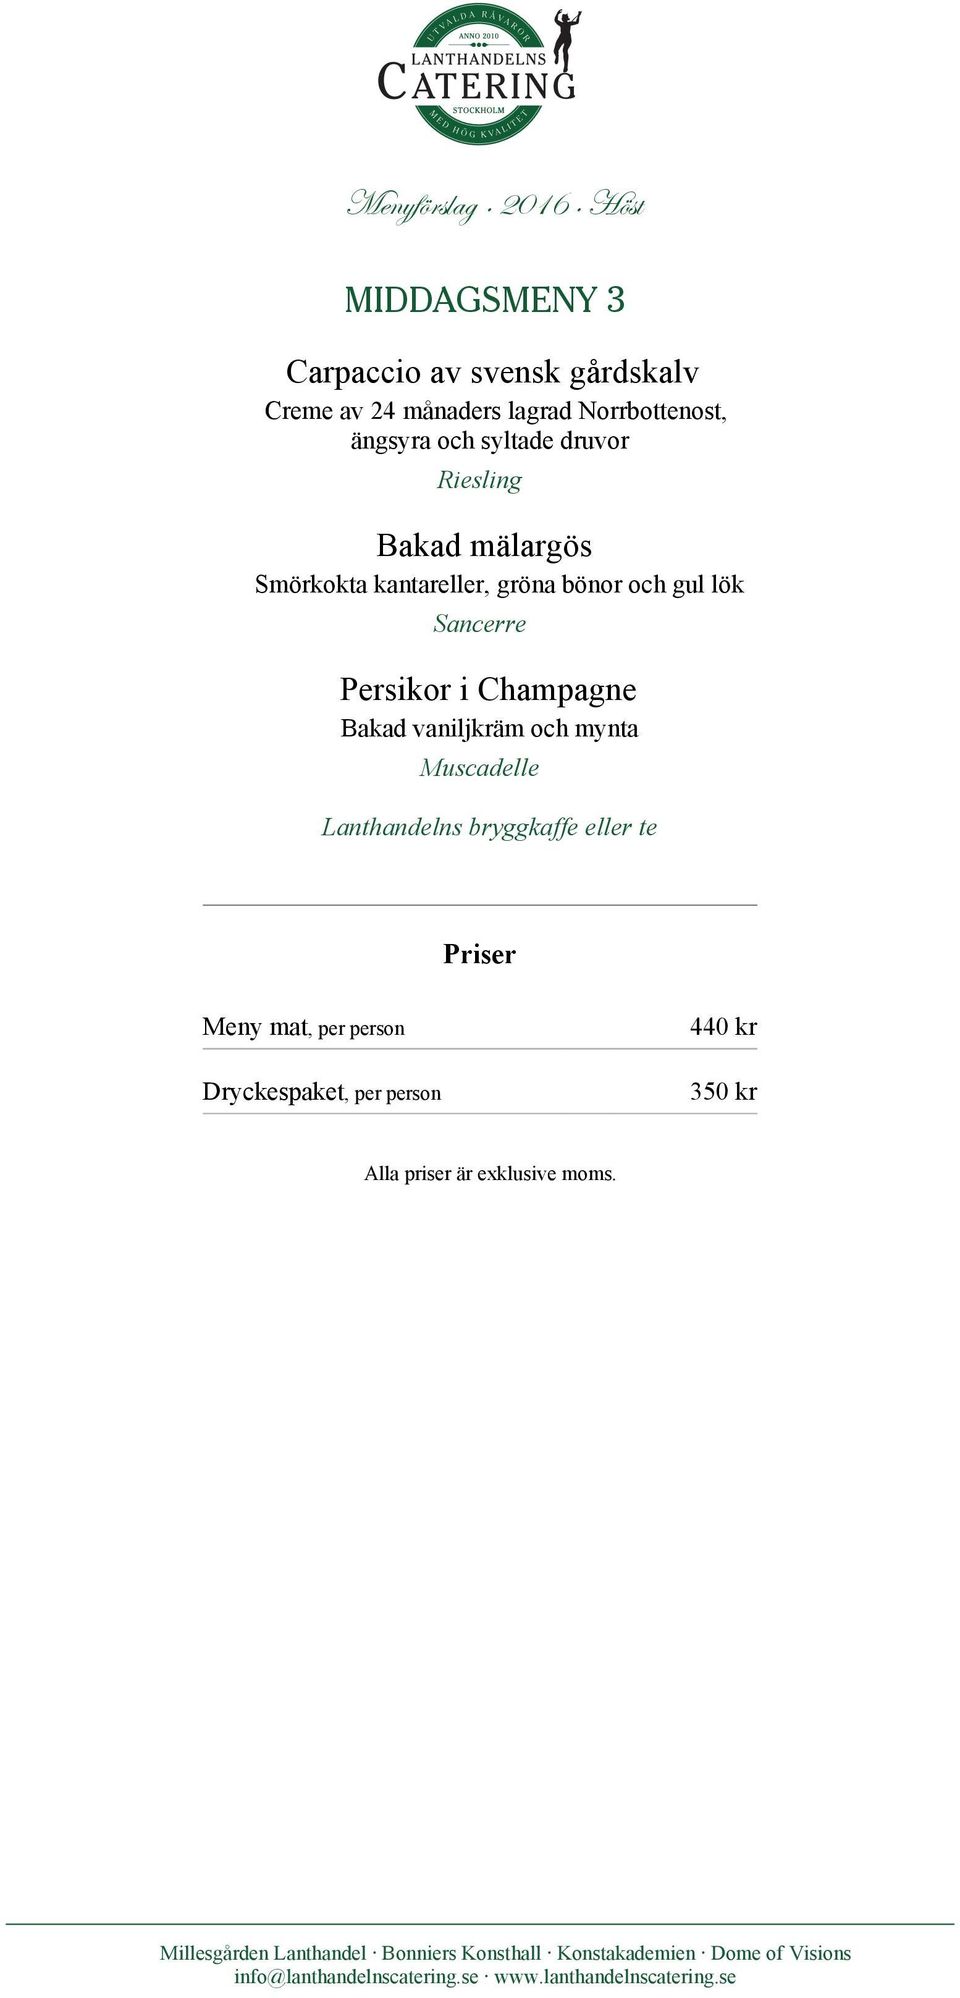 Smörkokta kantareller, gröna bönor och gul lök Sancerre Persikor i Champagne Bakad